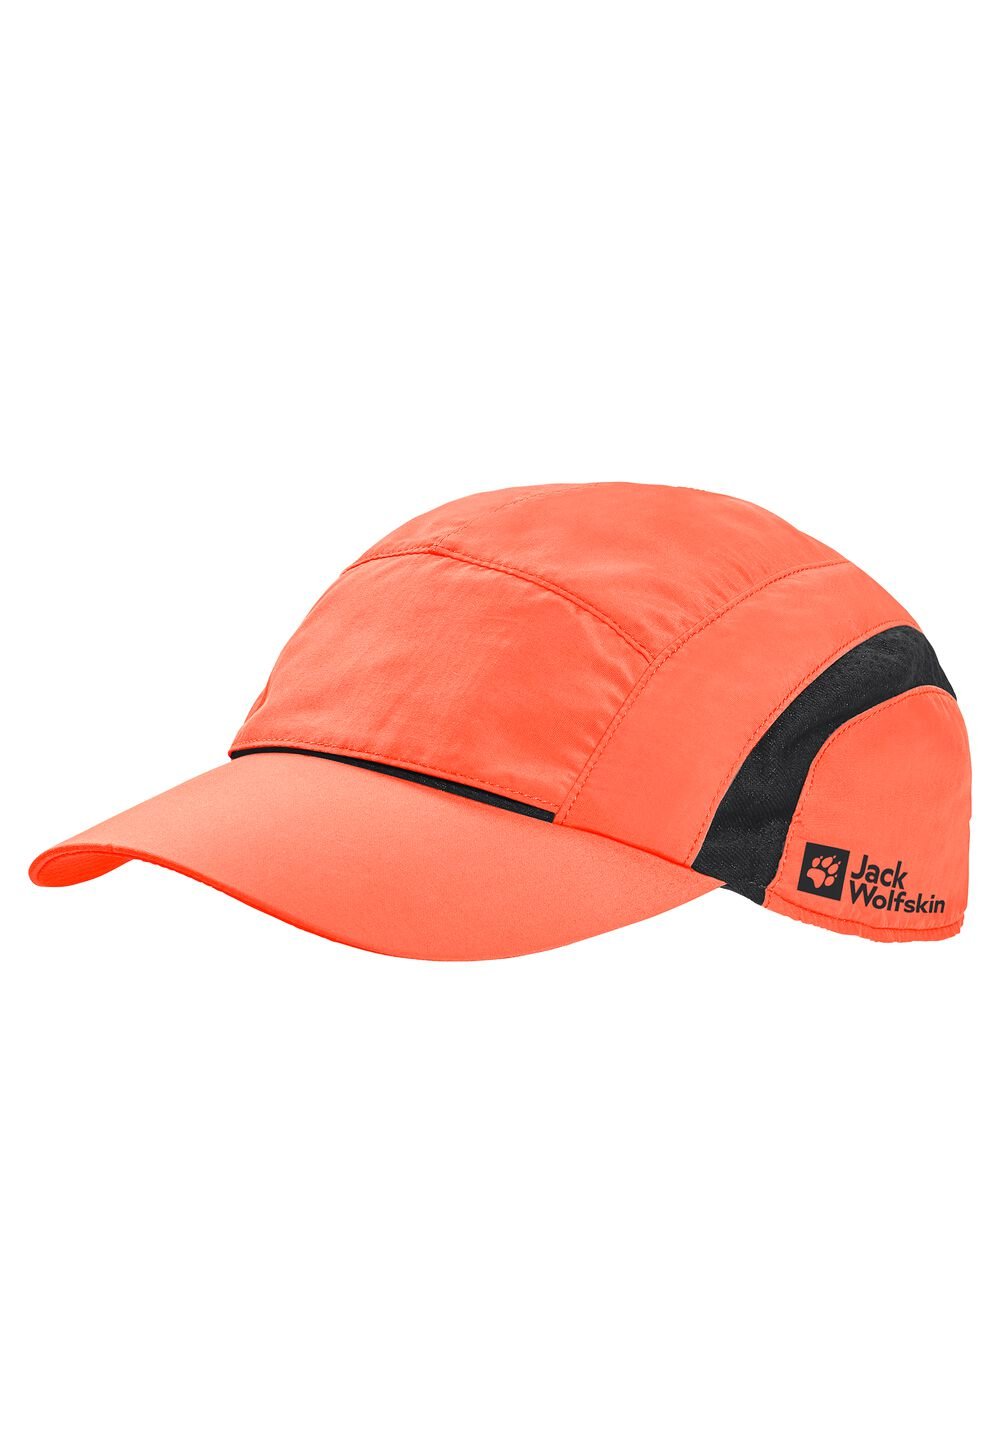 Jack Wolfskin Vent Support System Cap Basecap M rood digital orange